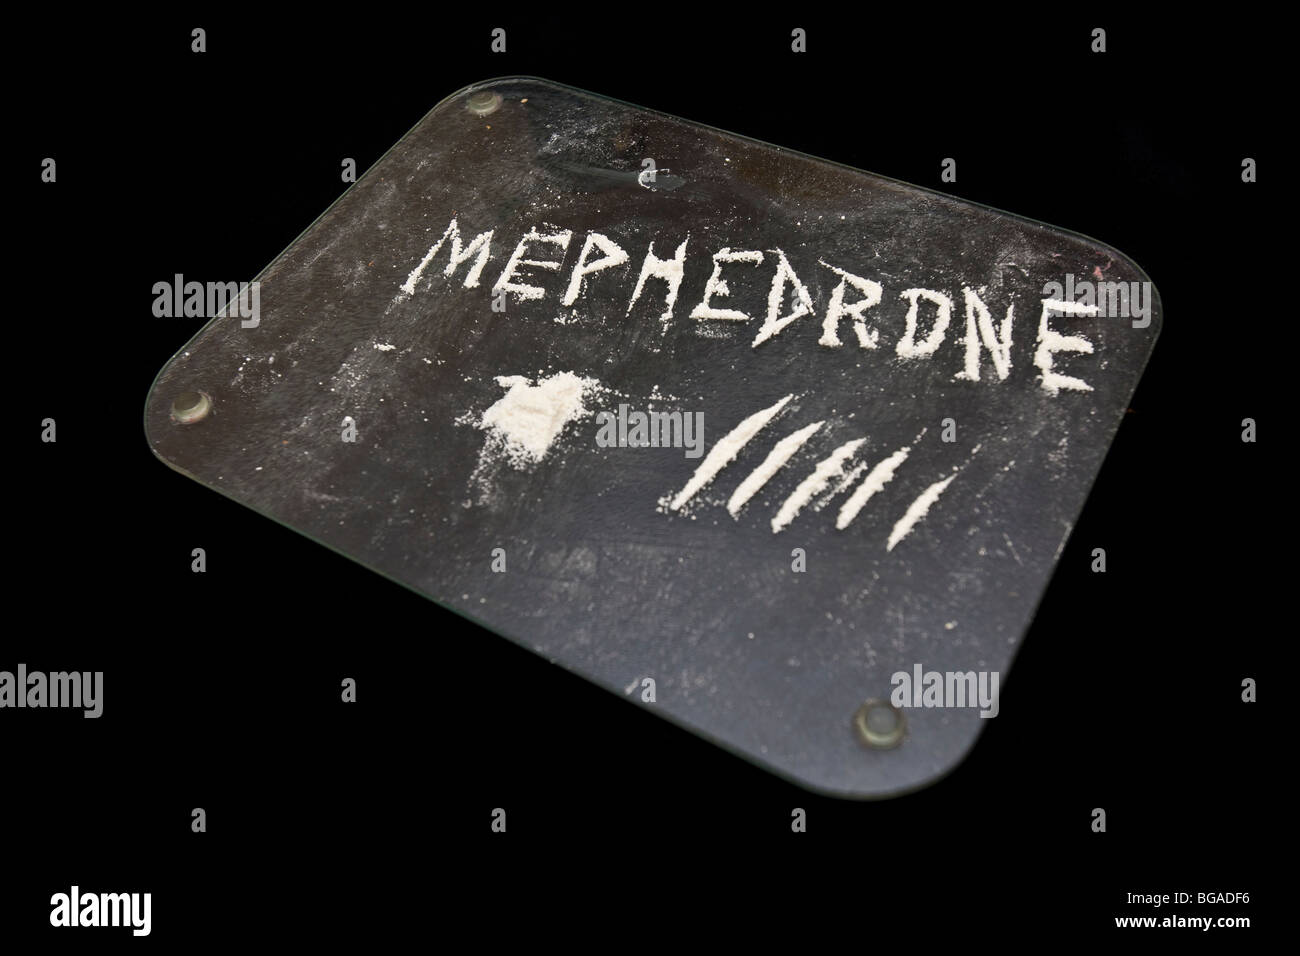 Mephedrone un sintetico droga stimolante delle anfetamine e cathinone classi. La sua spesso paragonato agli stupefacenti come la cocaina e l'estasi. Foto Stock